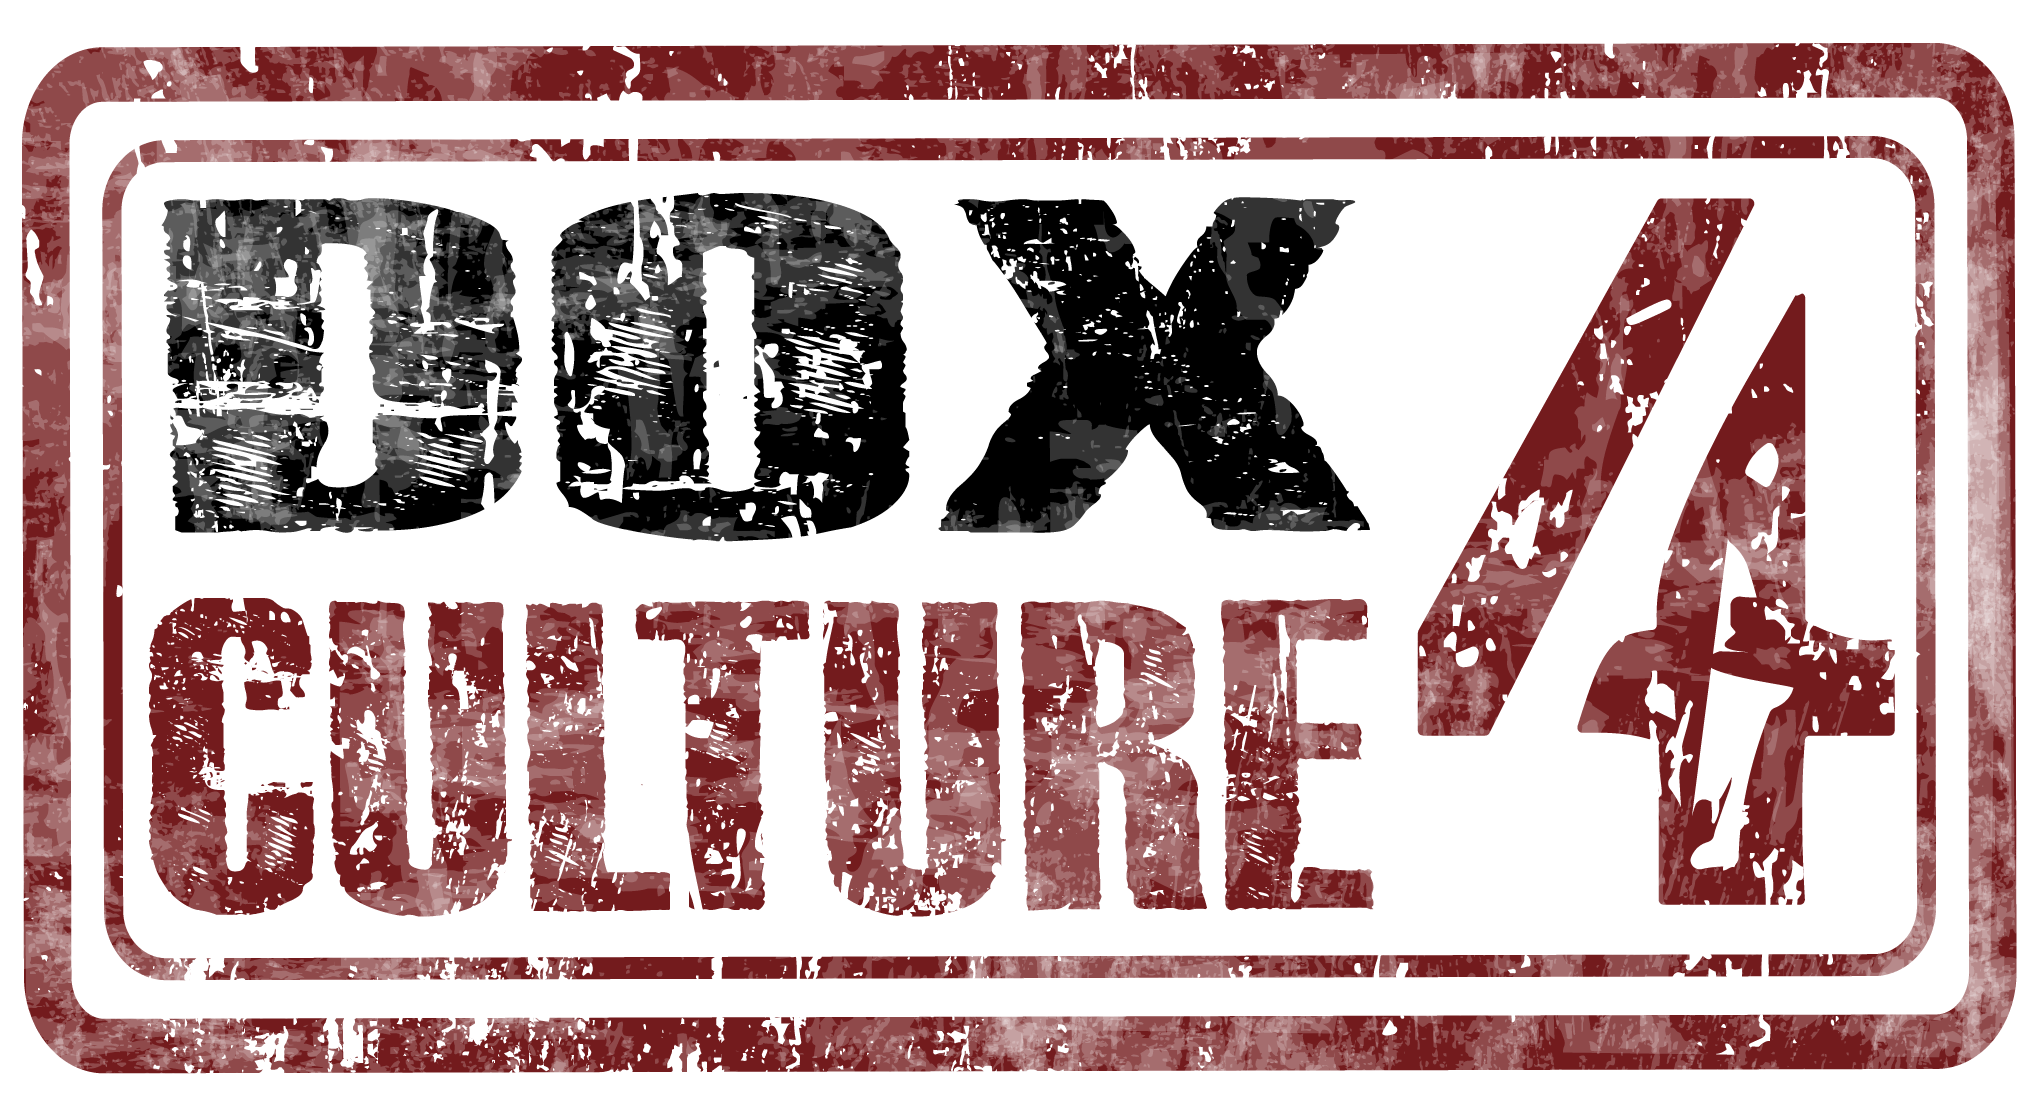 Dox4culture3c